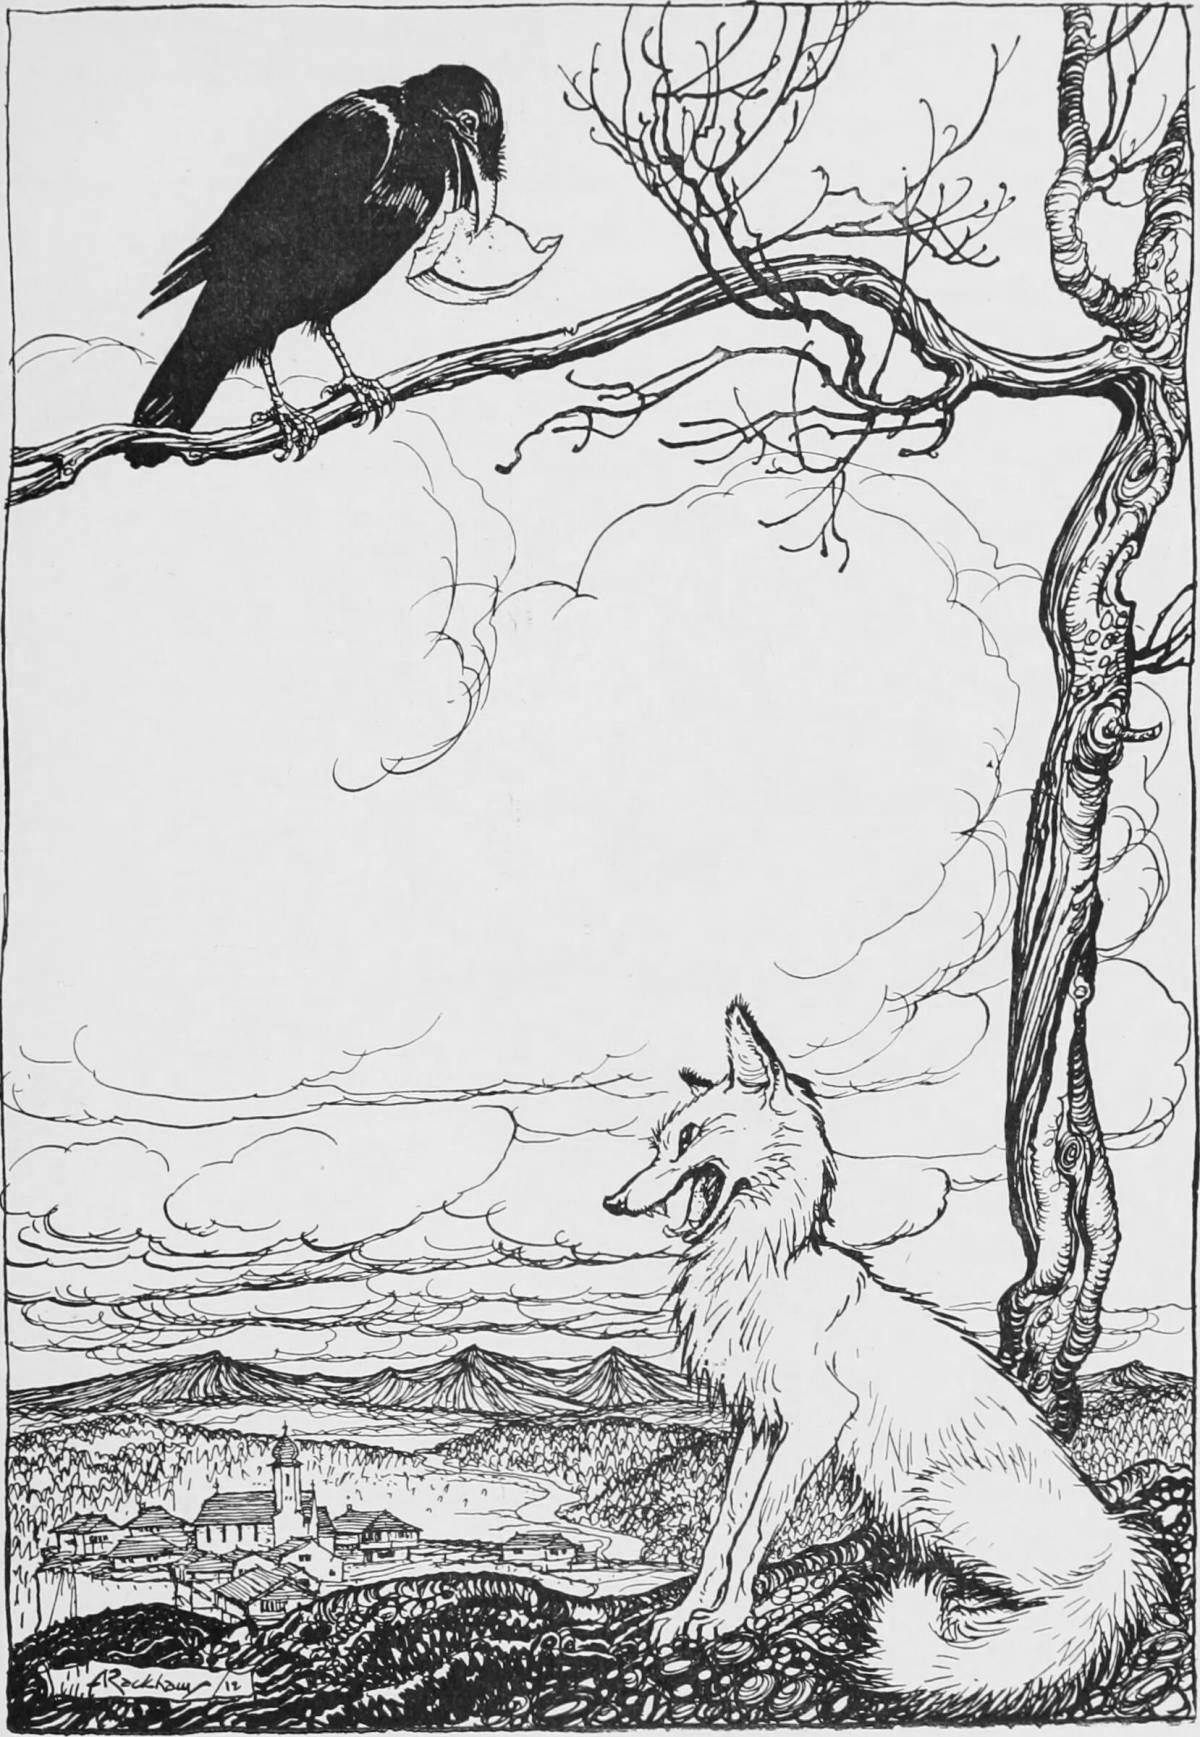 Иллюстрация к басне Эзопа ворон и лисица